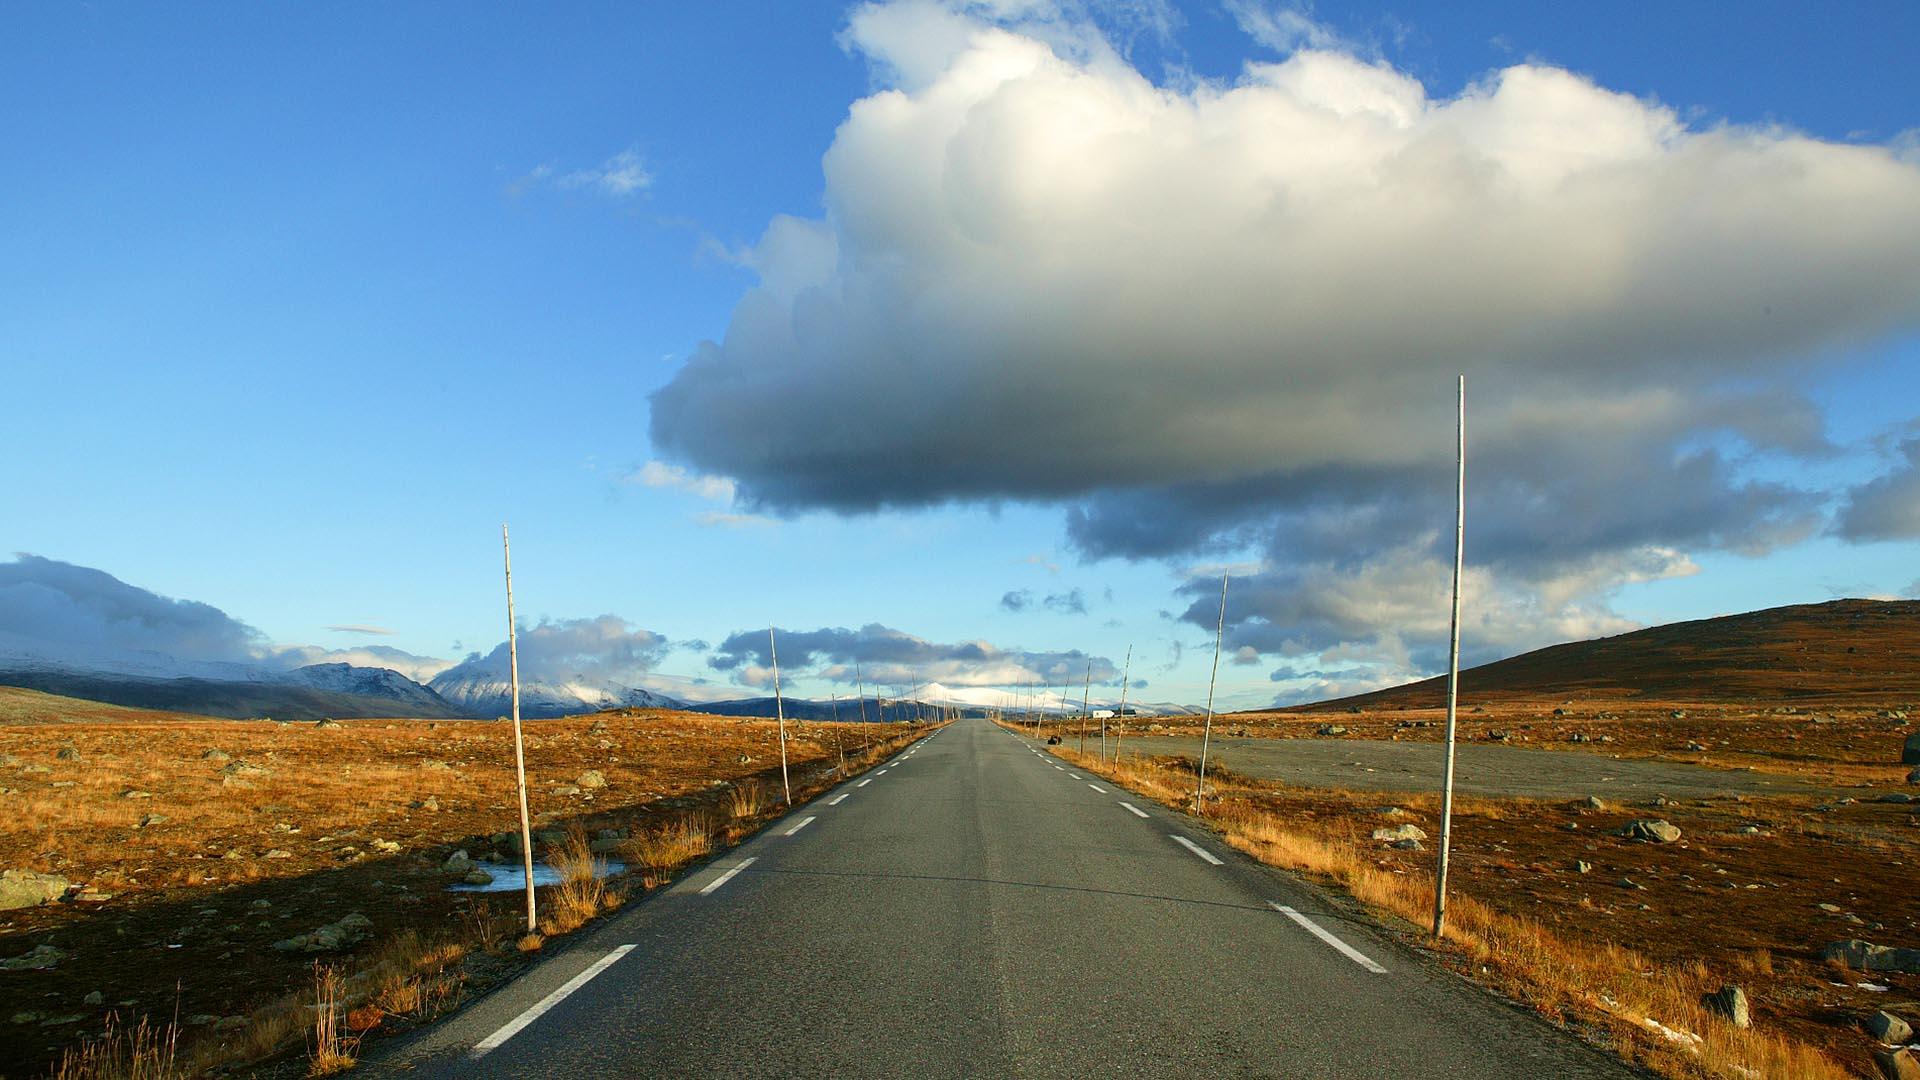 Veien over Valdresflye i midten av bildet med sine karakteriske høye brøytestikker.